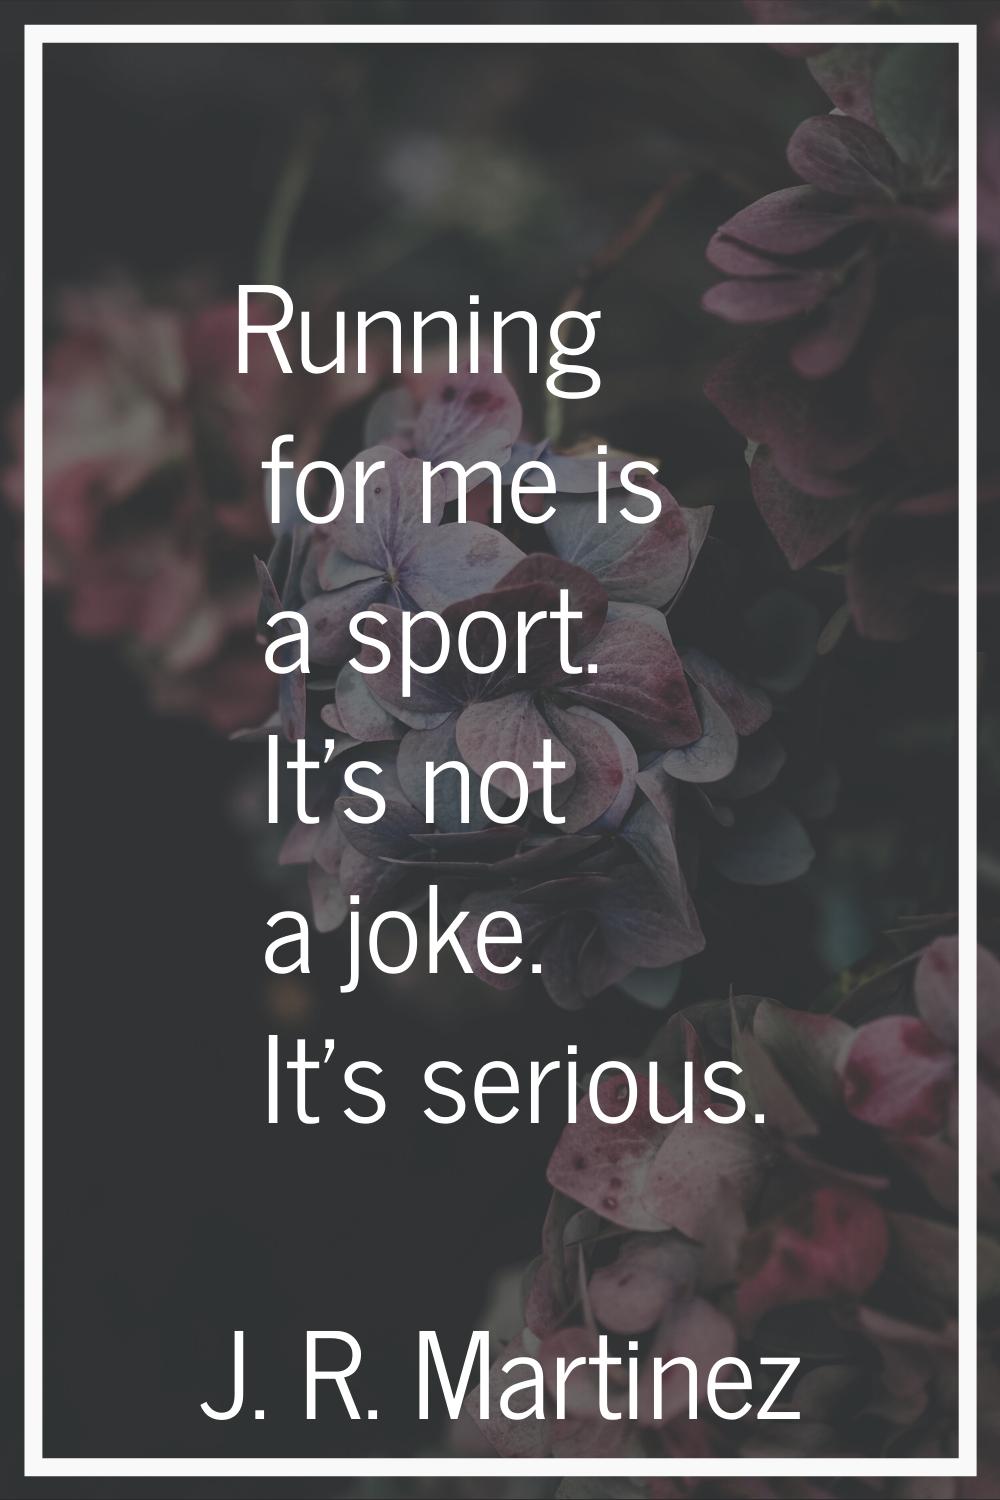 Running for me is a sport. It's not a joke. It's serious.